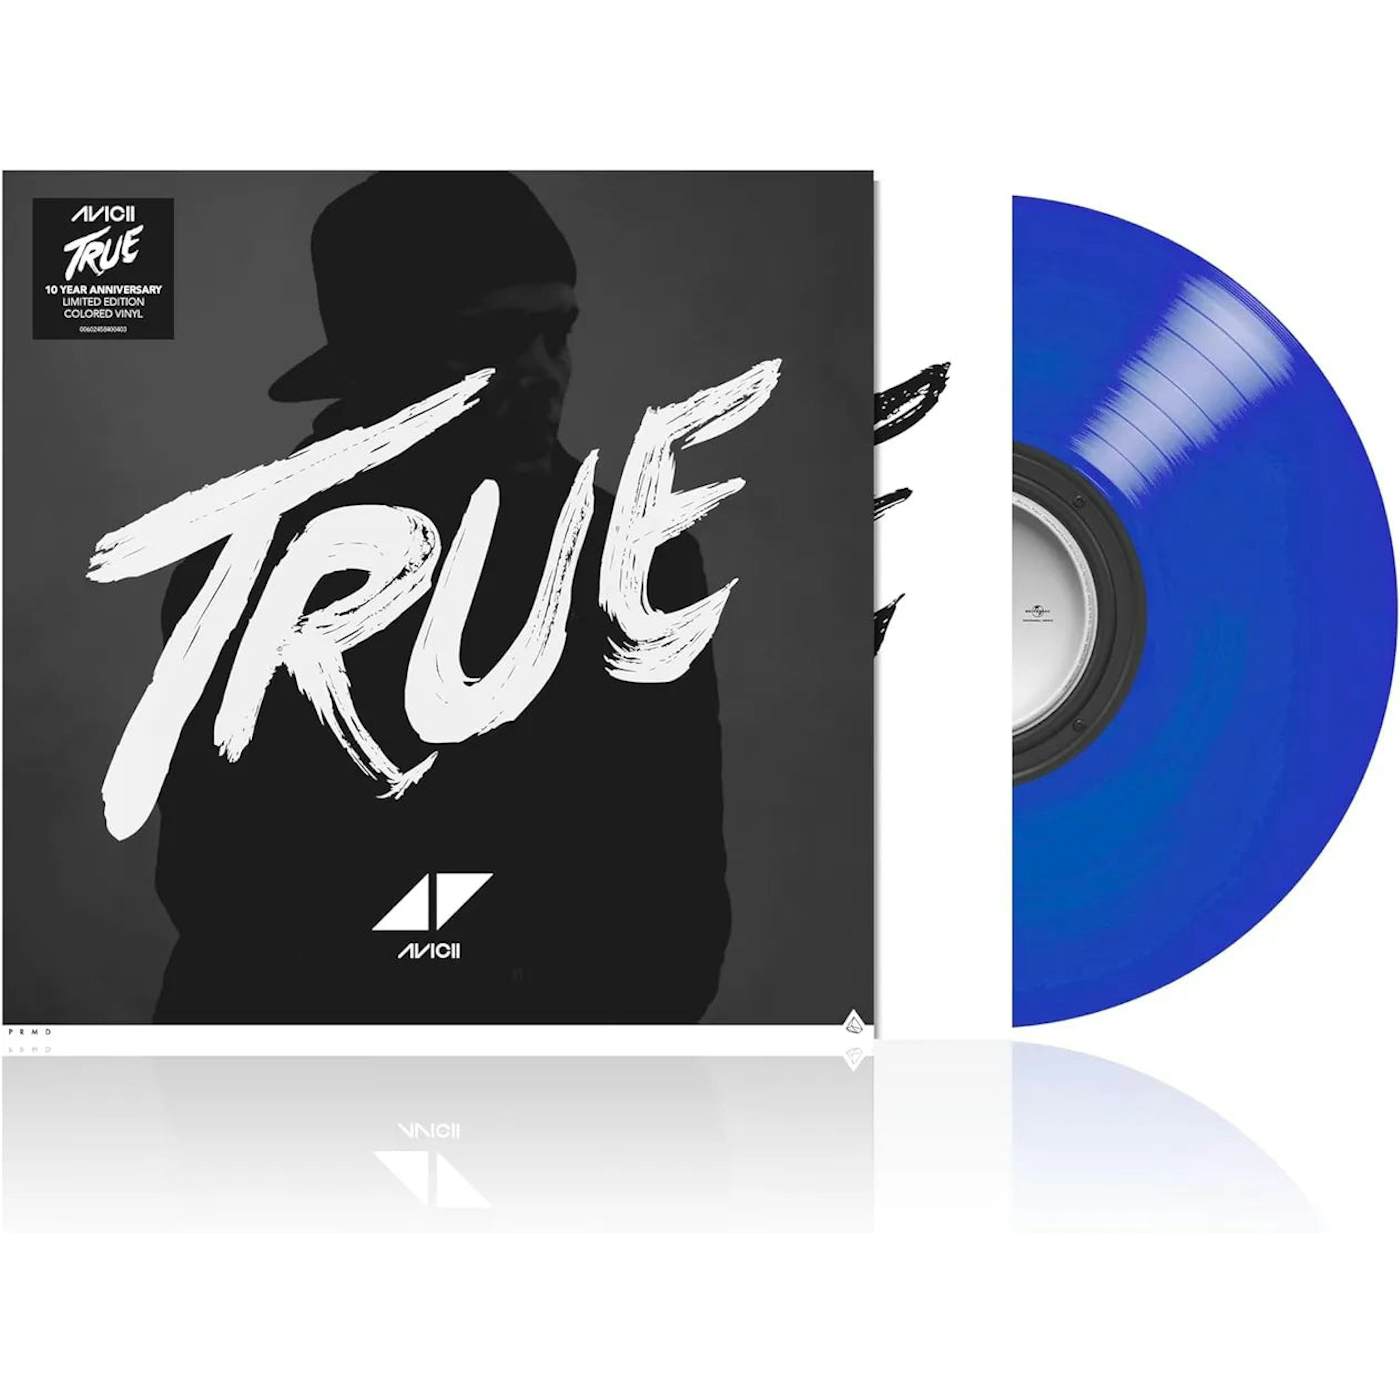 Avicii - True (10th anniversary) (Vinyl)